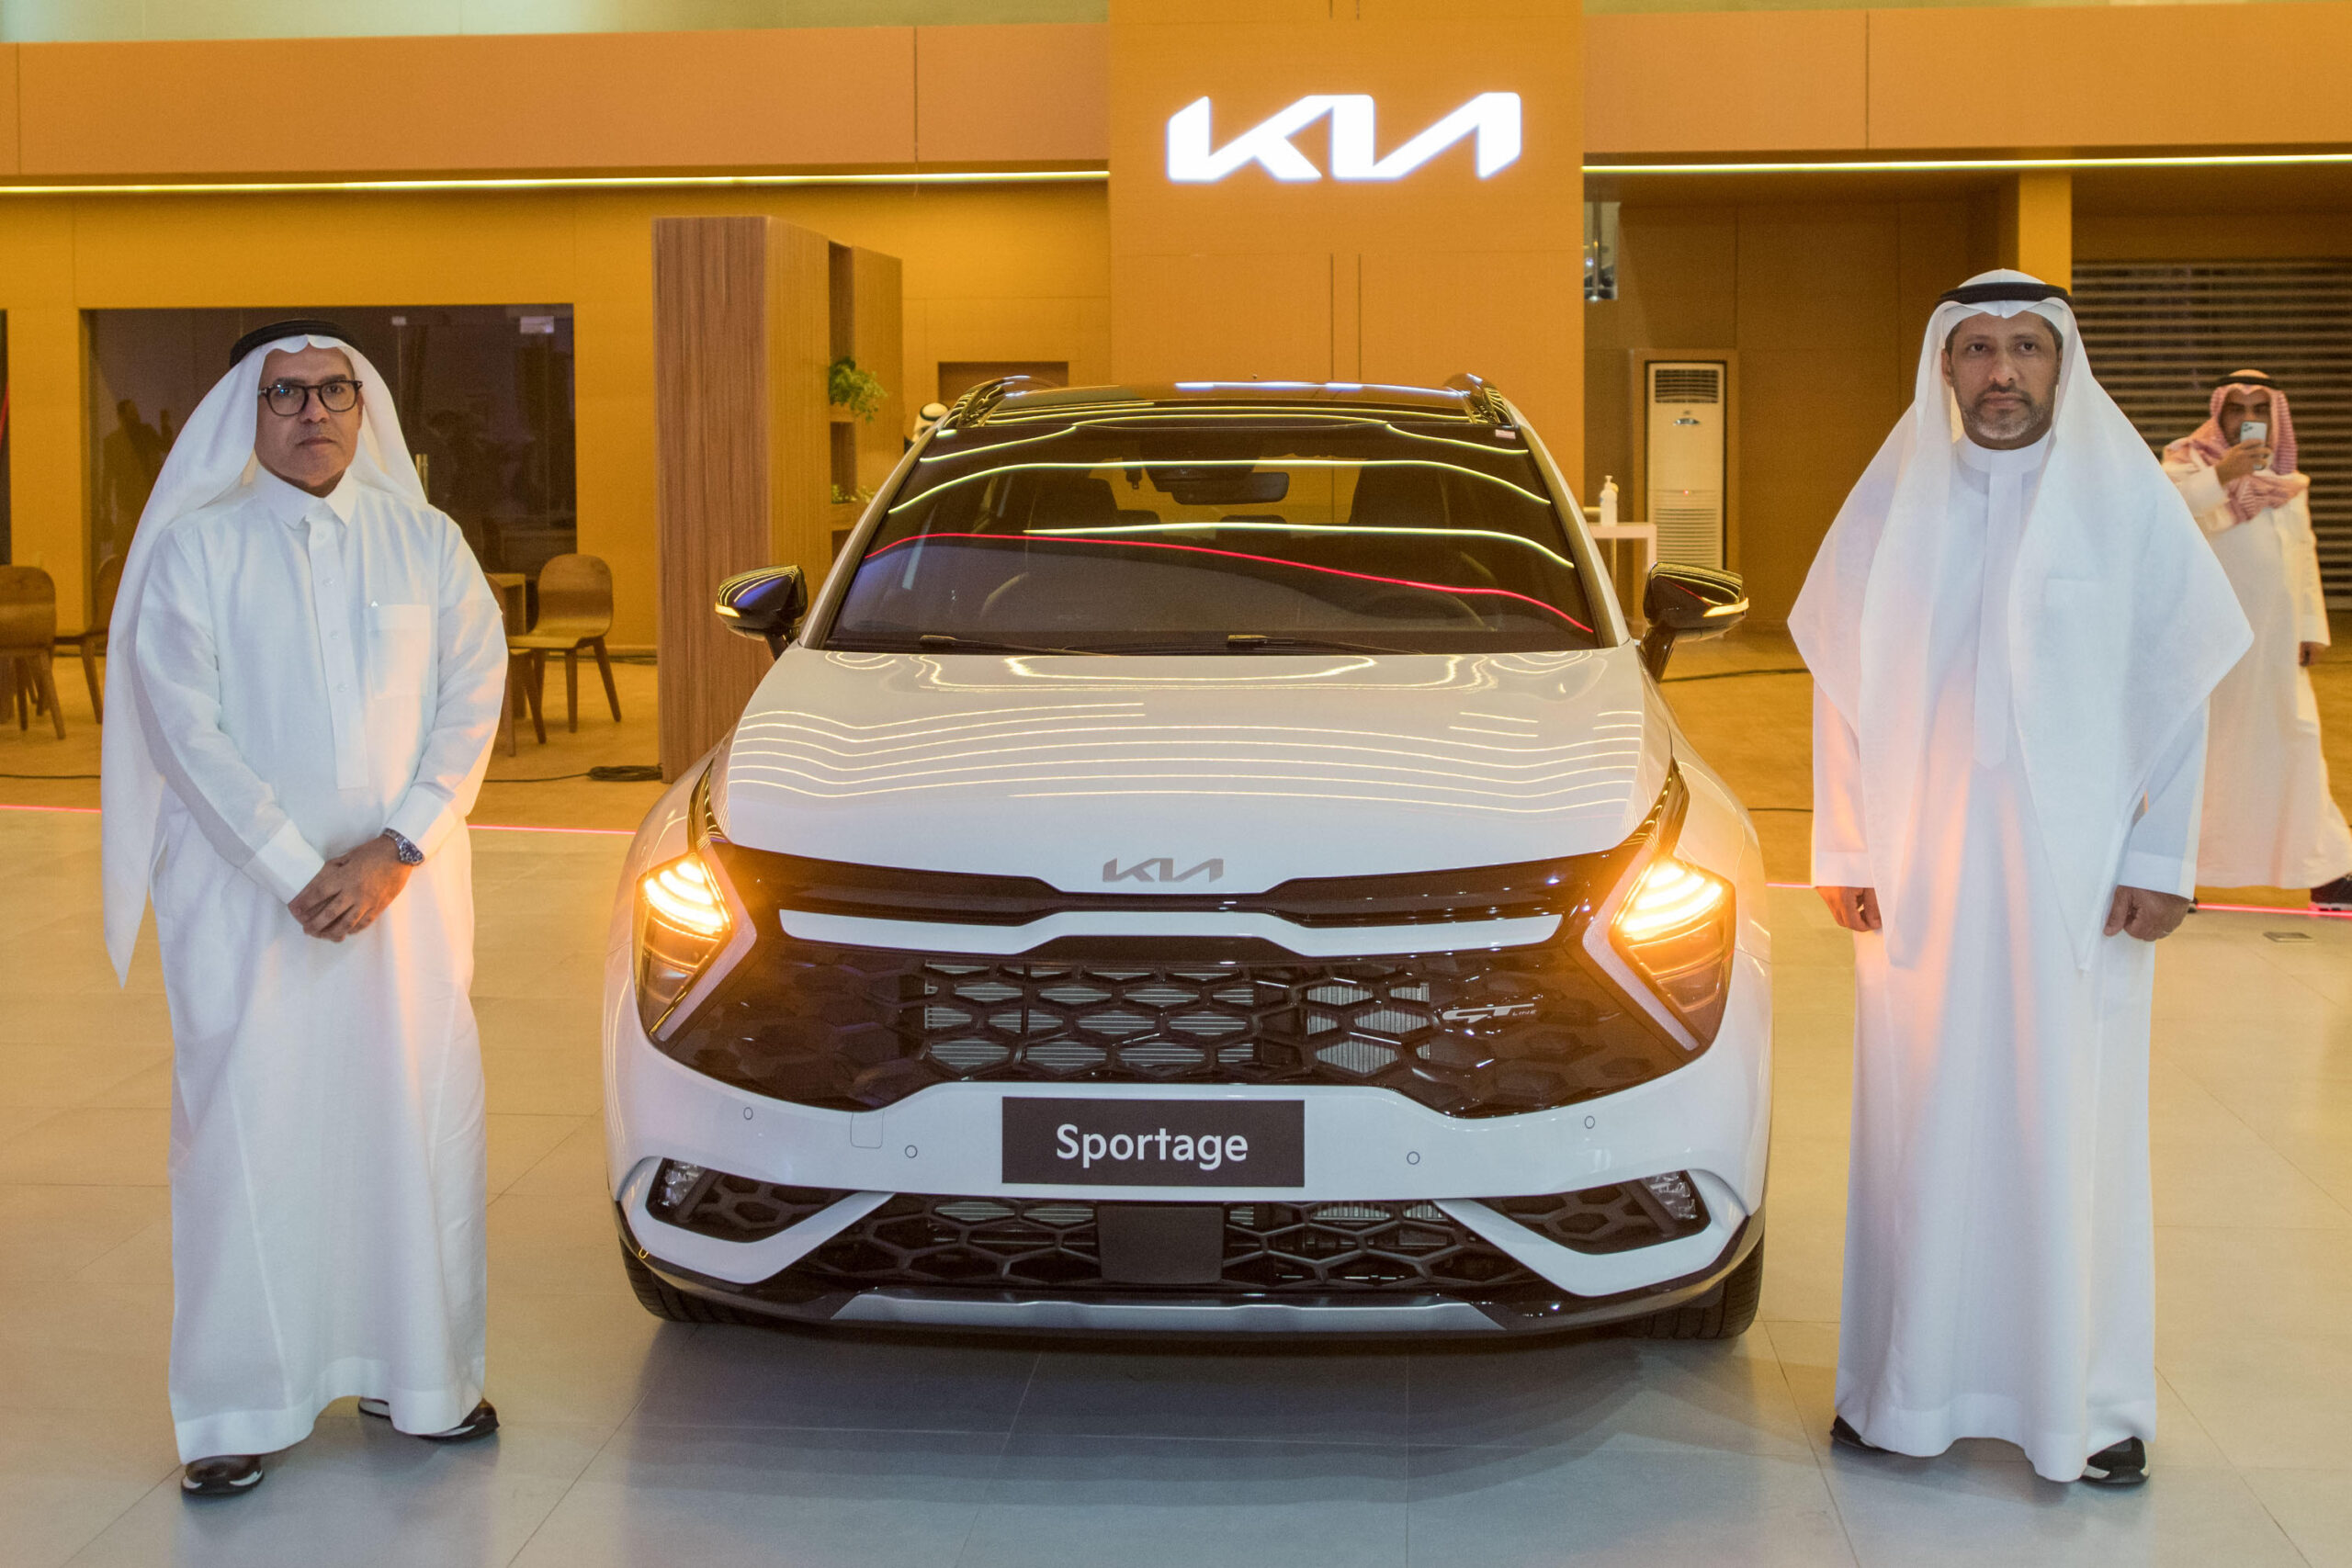 "كيا الجبر" تدشن الجيل الخامس من سيارة سبورتج في الرياض في حفل احتضنه معرضها في البديعة وسط حضور كبير 7